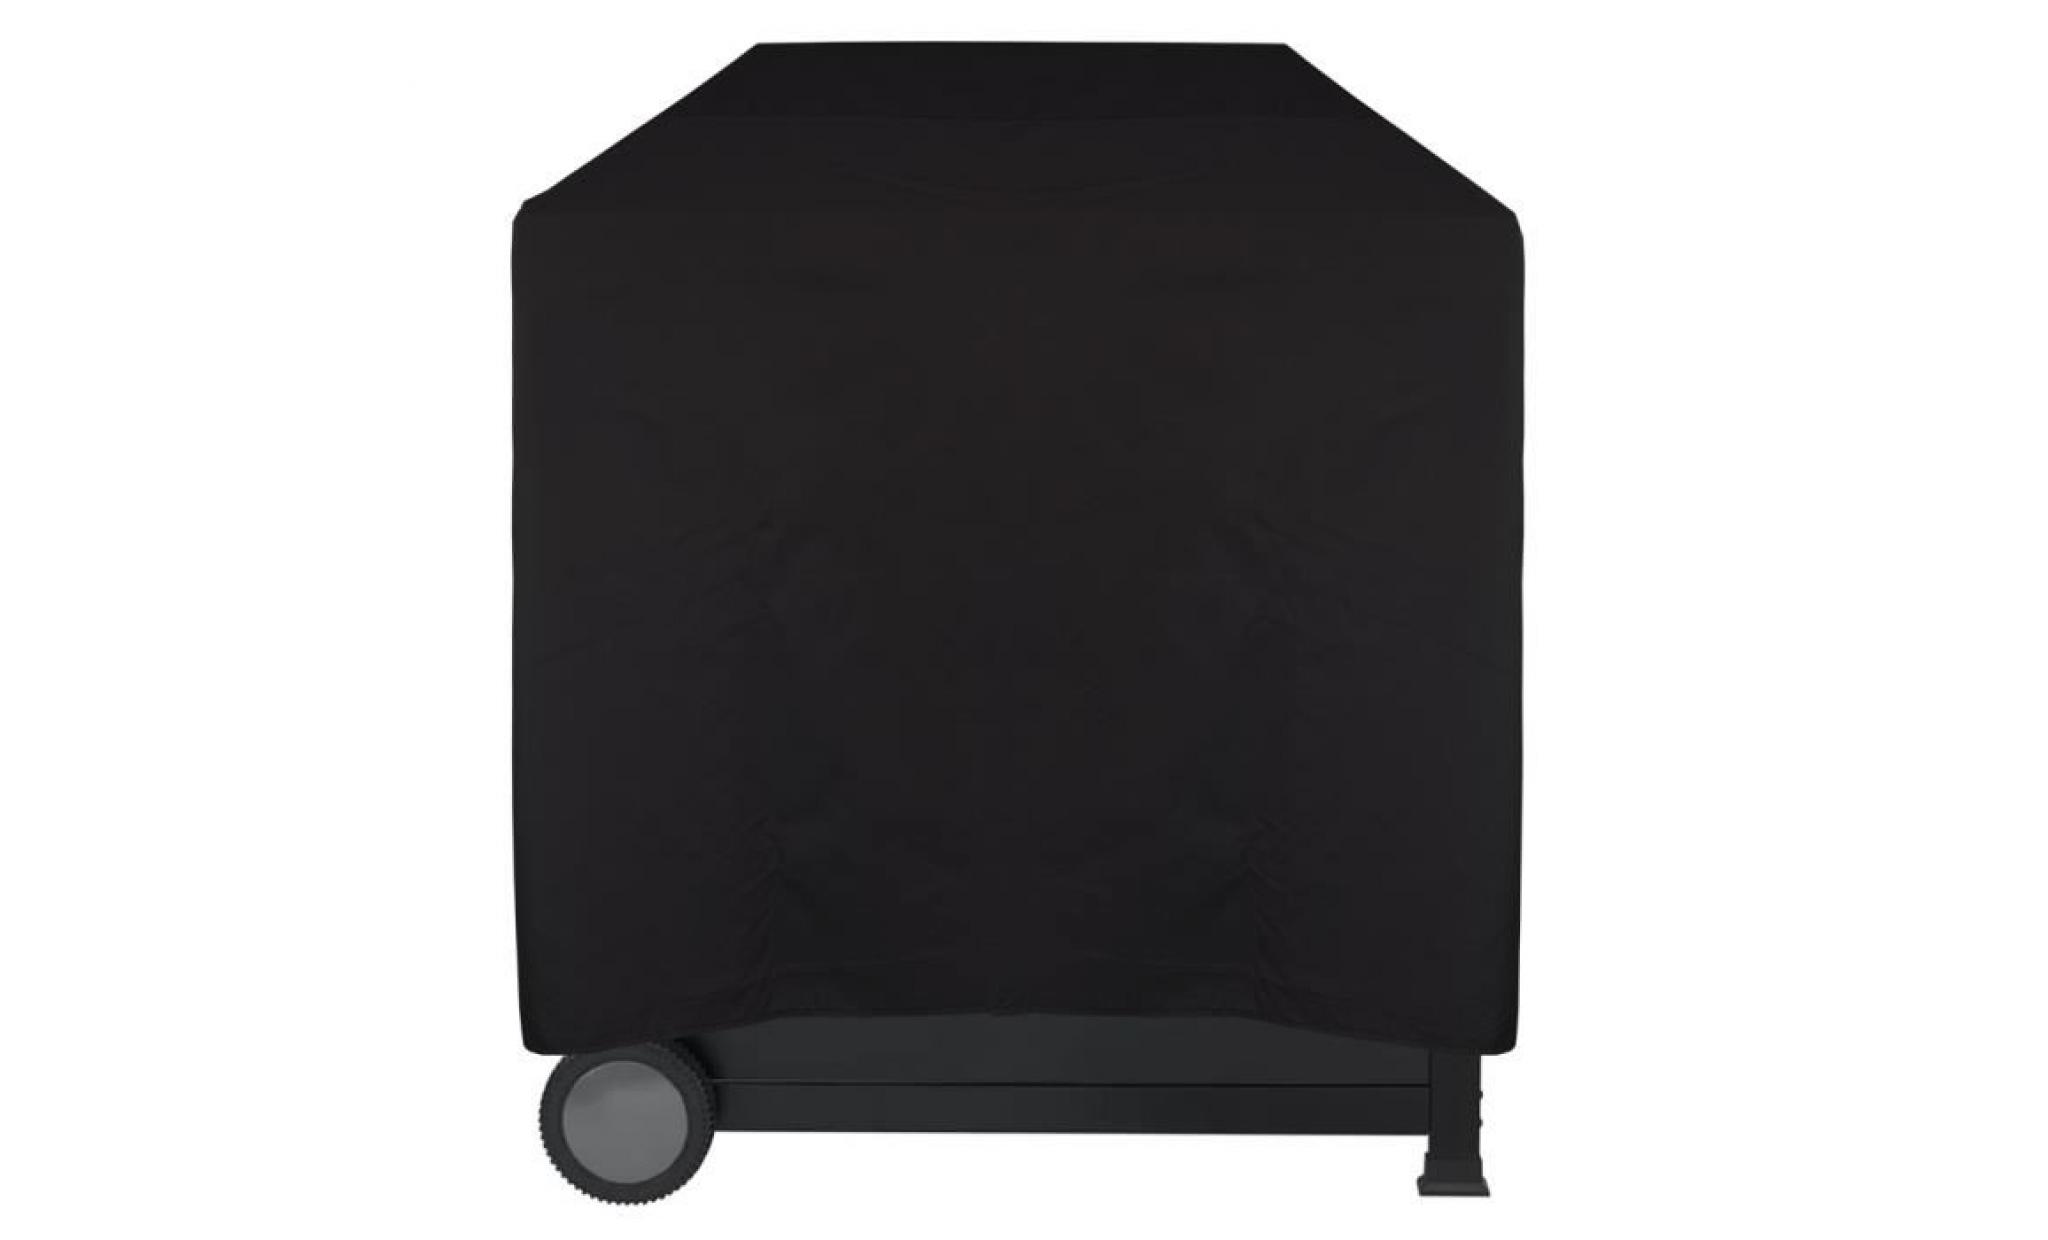 housse pour barbecue imperméable lounge noir, s 52 x 52 x 52 cm   protège contre la pluie, la saleté et les rayons du soleil